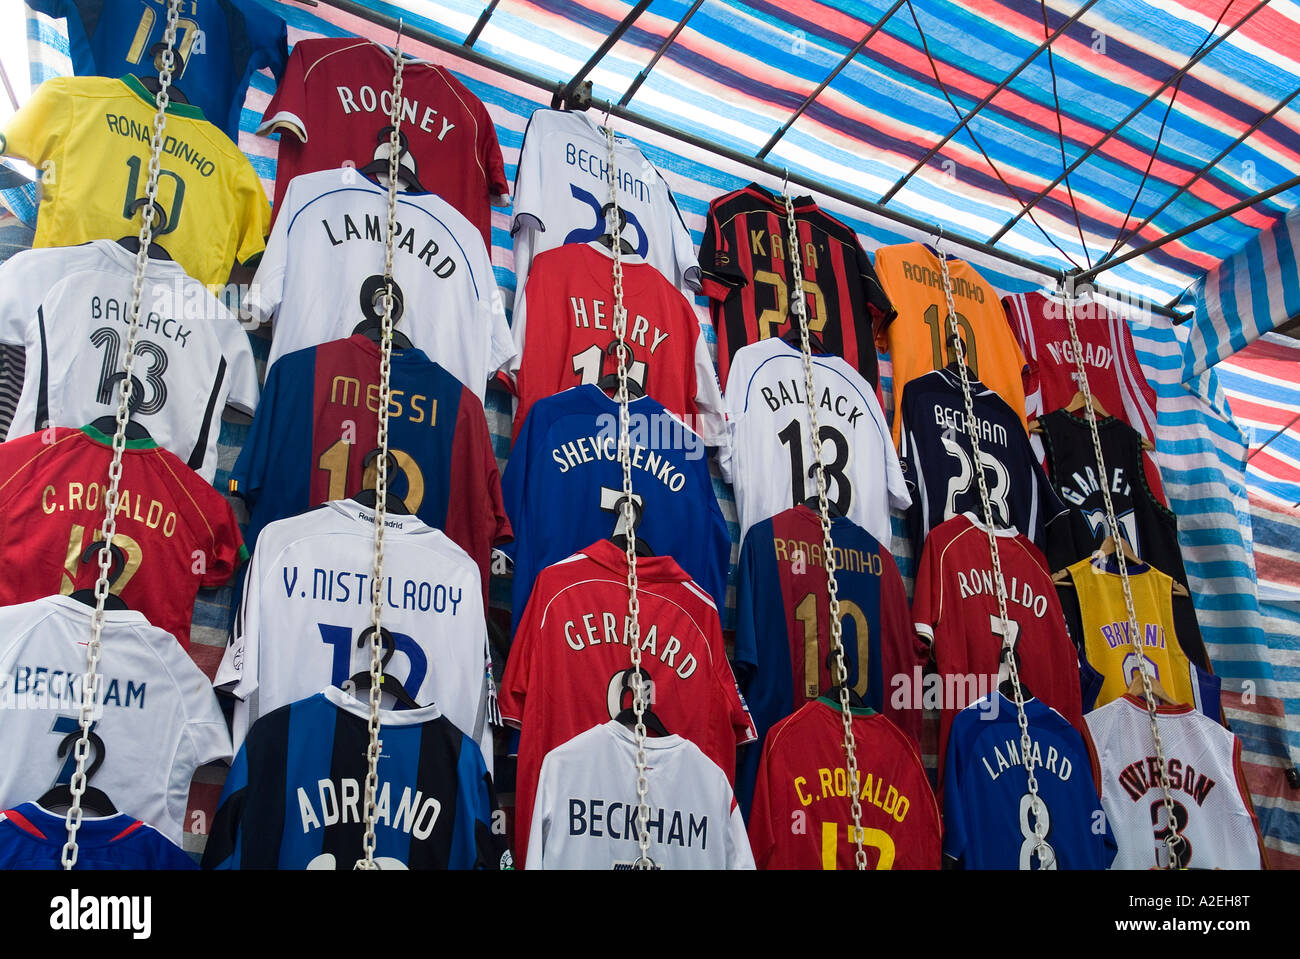 dh Tung choi MONG KOK HONG KONG puesto del mercado chino juego de bandas de  fútbol mongkok ropa falsa camisas falsificaciones artículos de  falsificación tira de china asia Fotografía de stock -